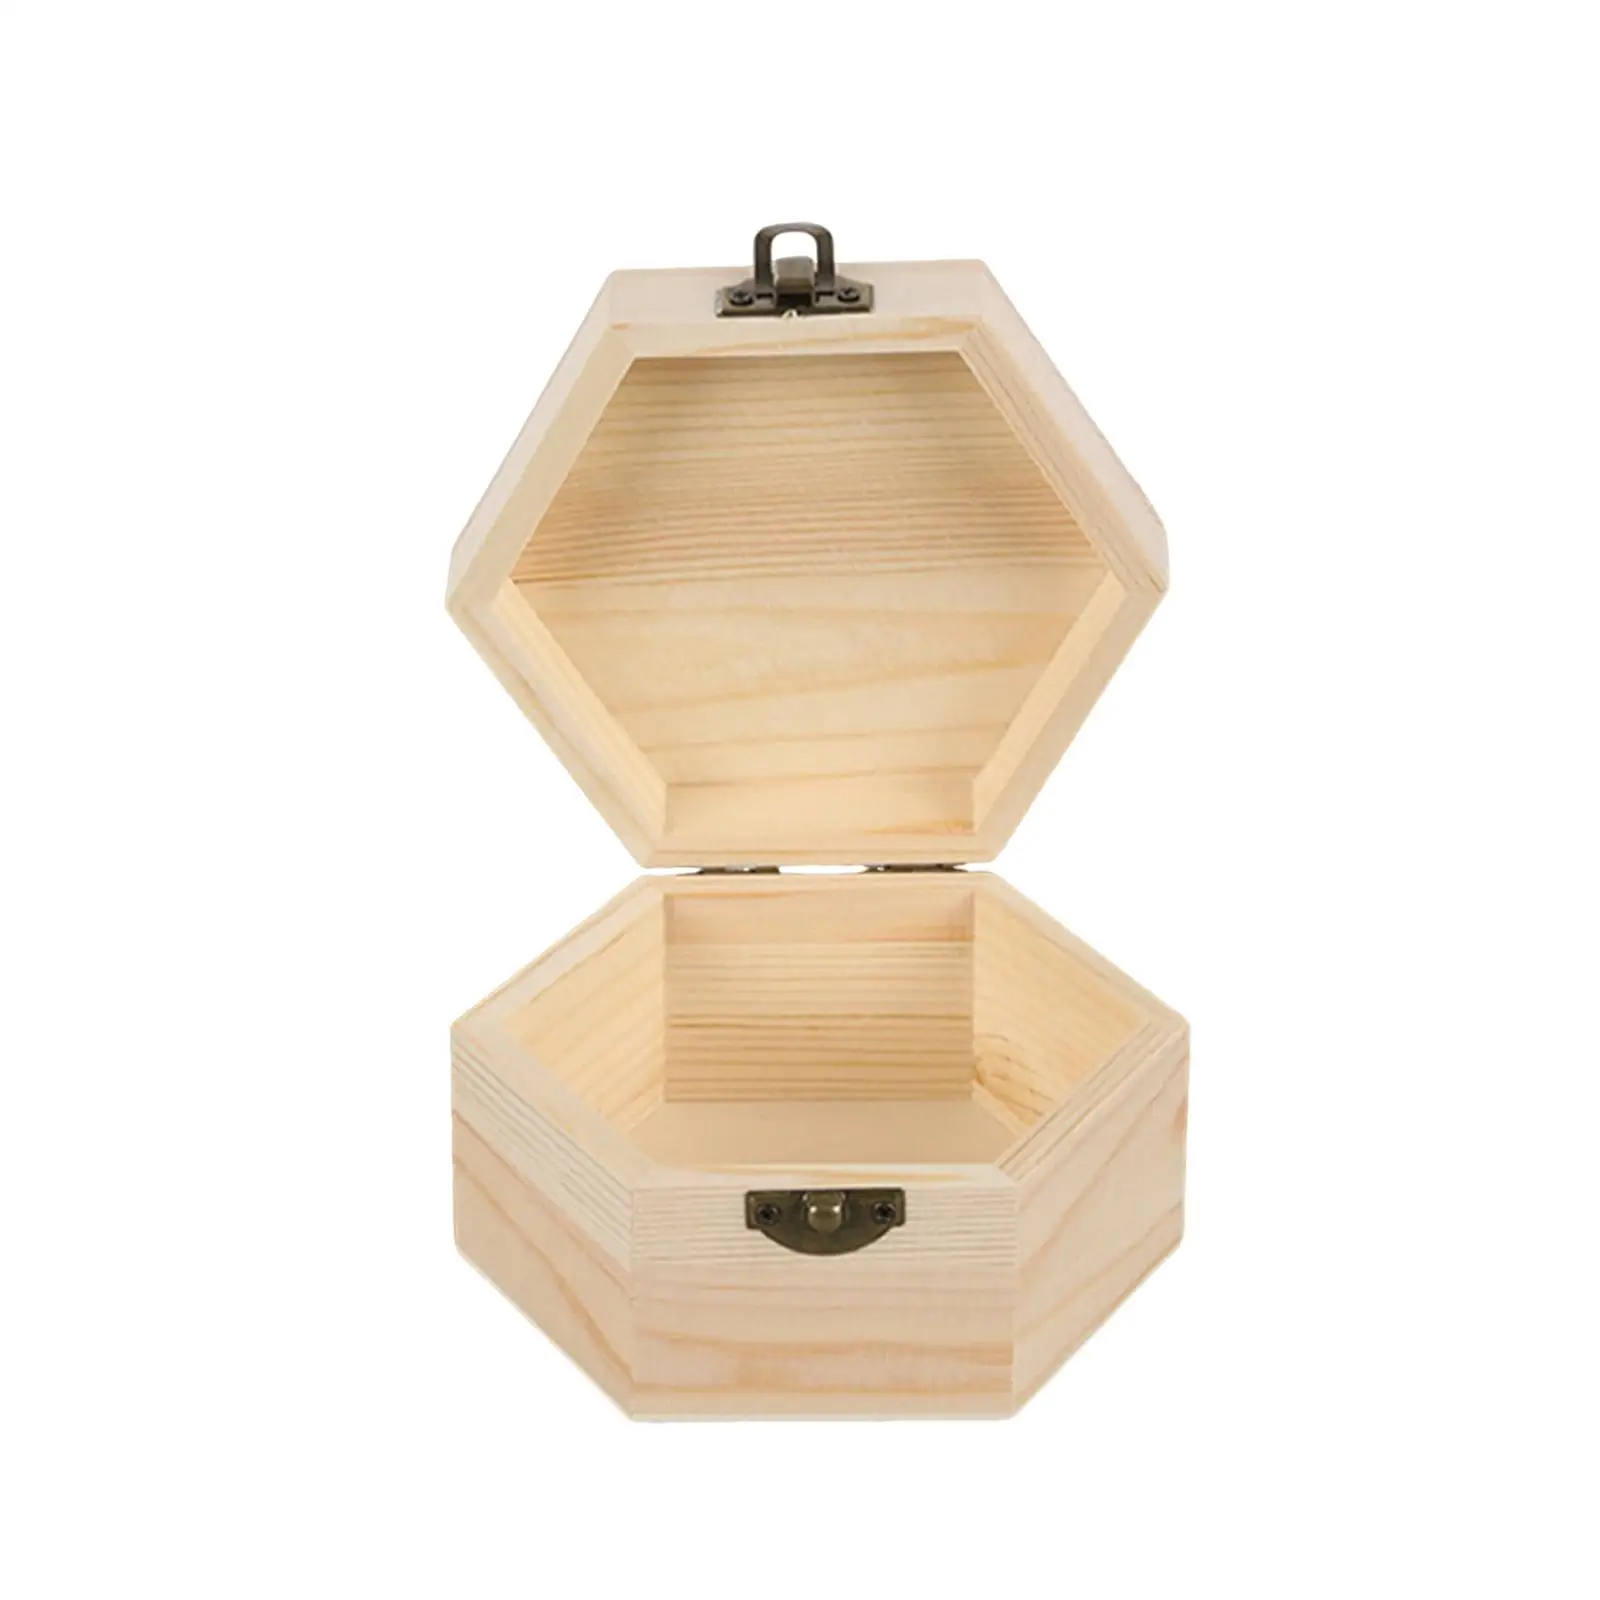 Hexagonal Jewelry Organizer Box Jewelry Display Case for Necklaces